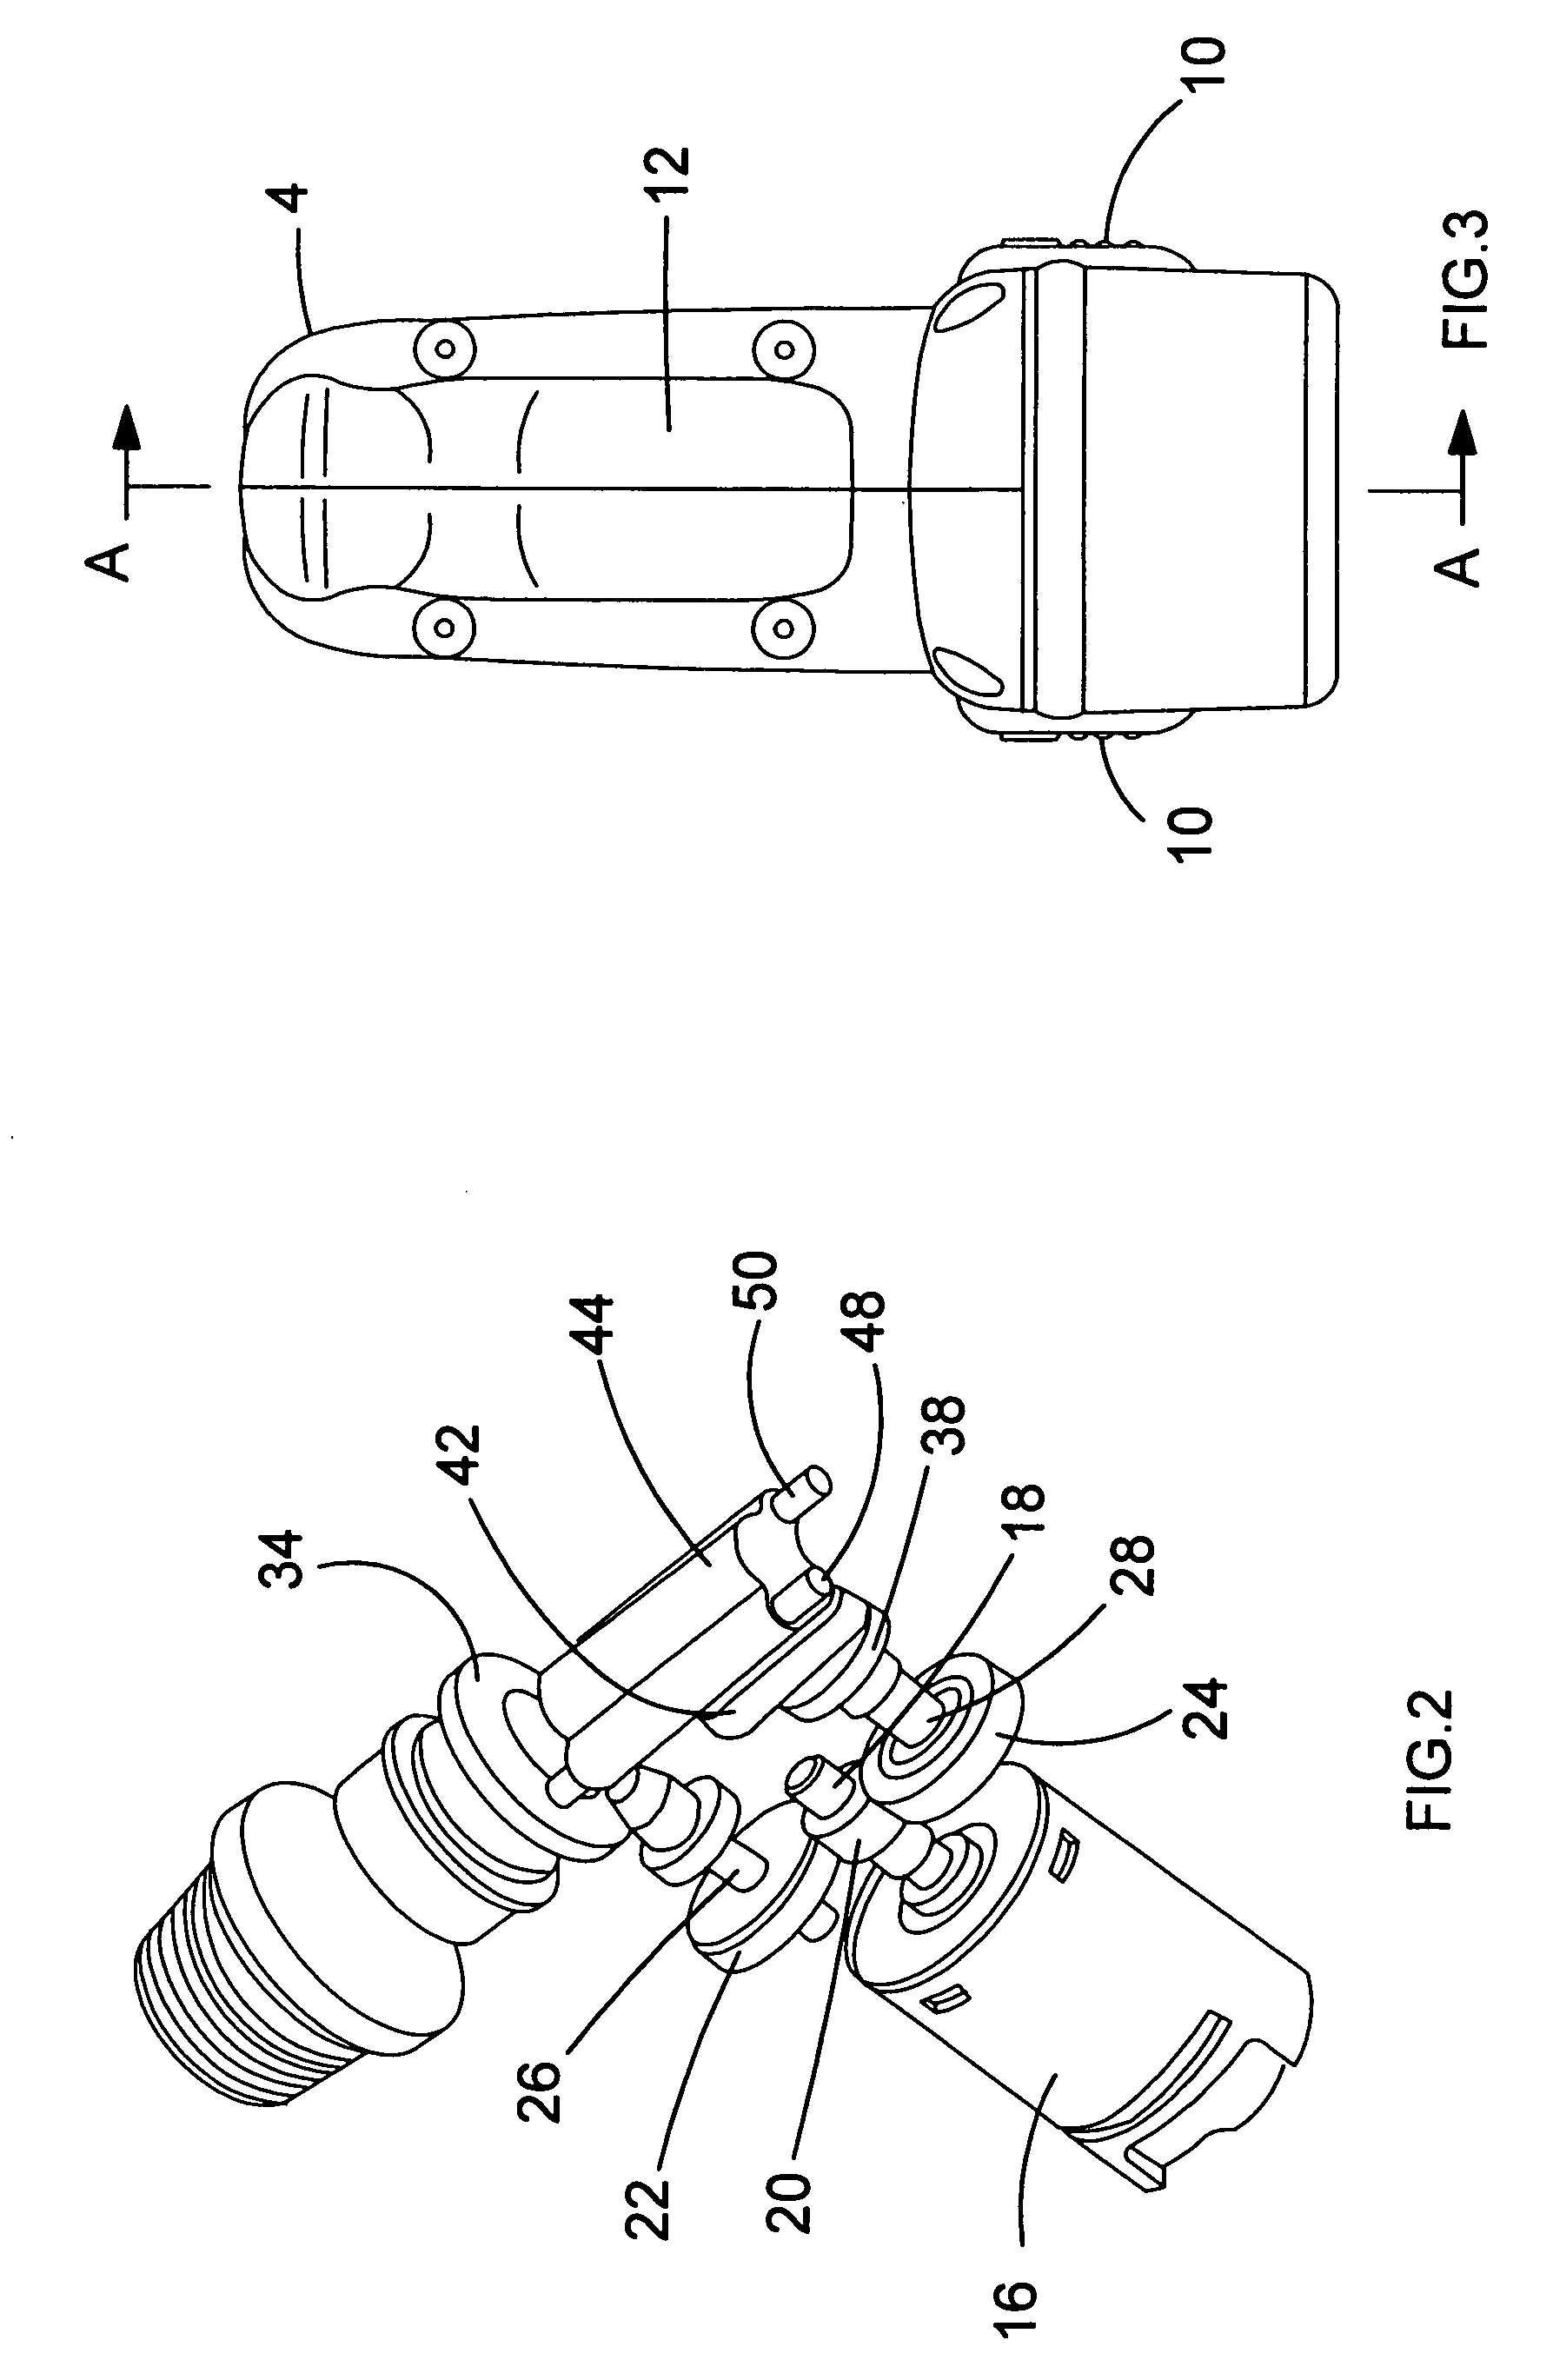 Hammer mechanism for power tool